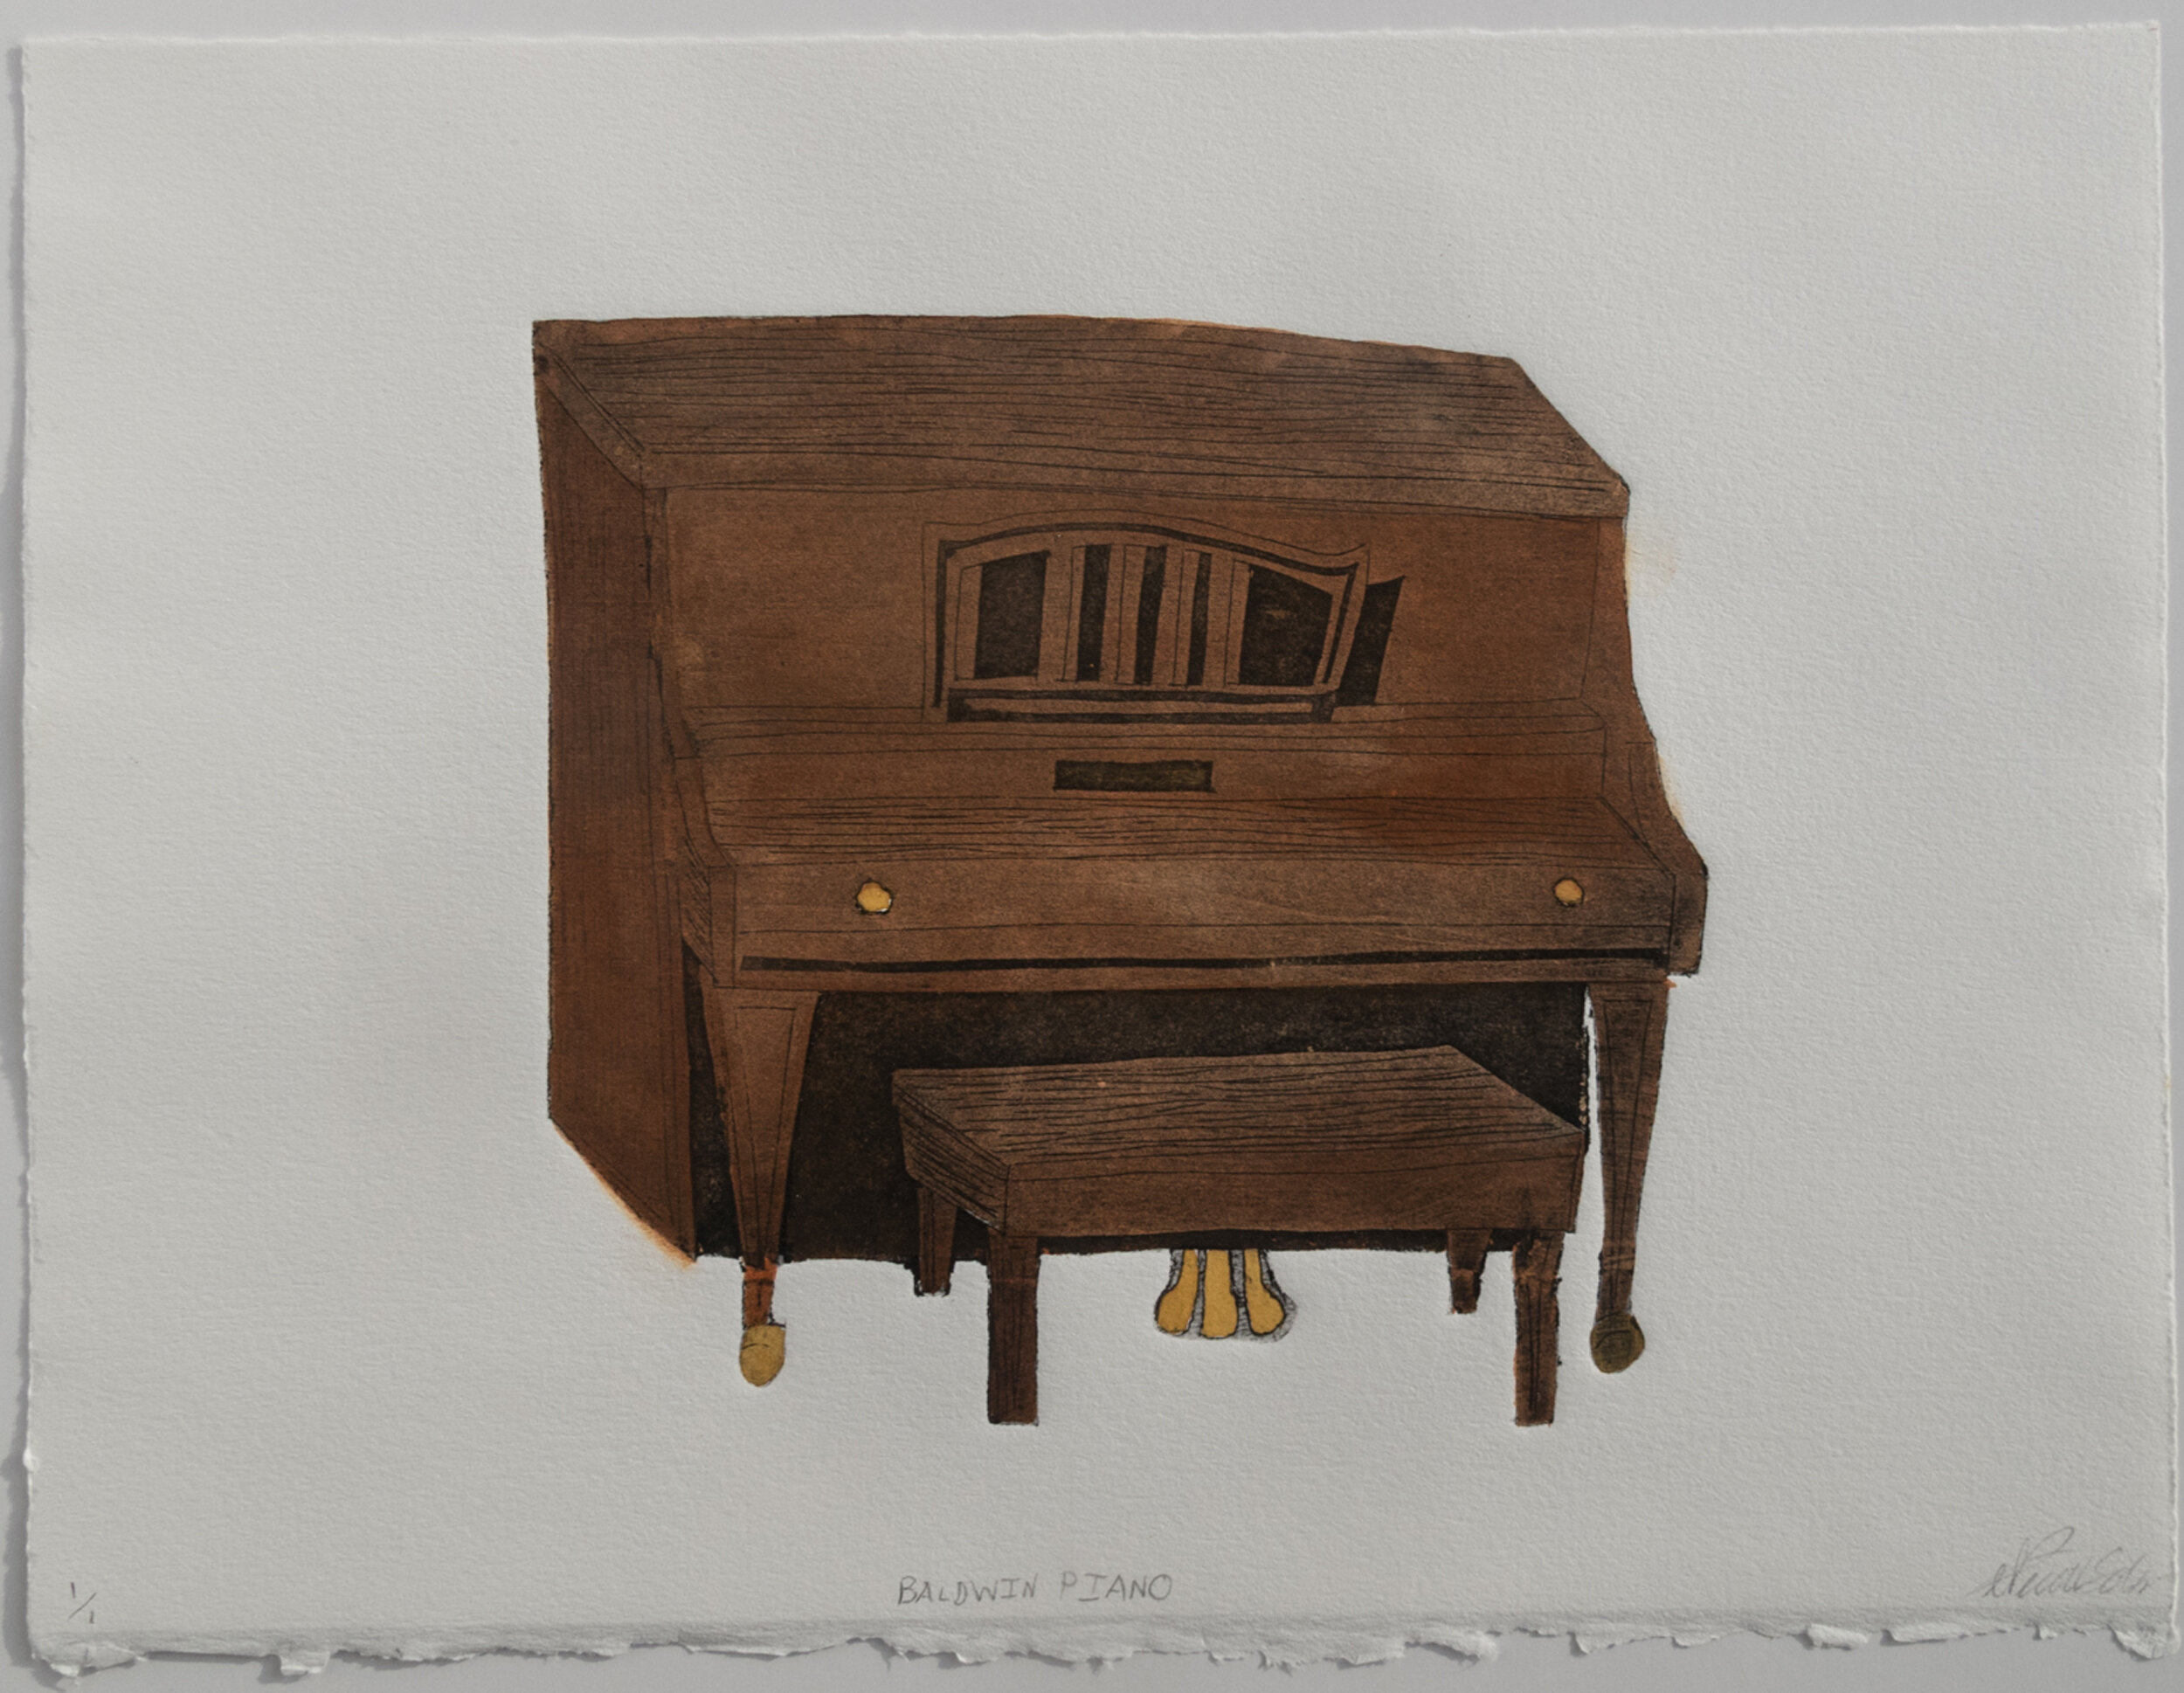 Nicole Soley; Bladwin Piano; collograph and watercolor